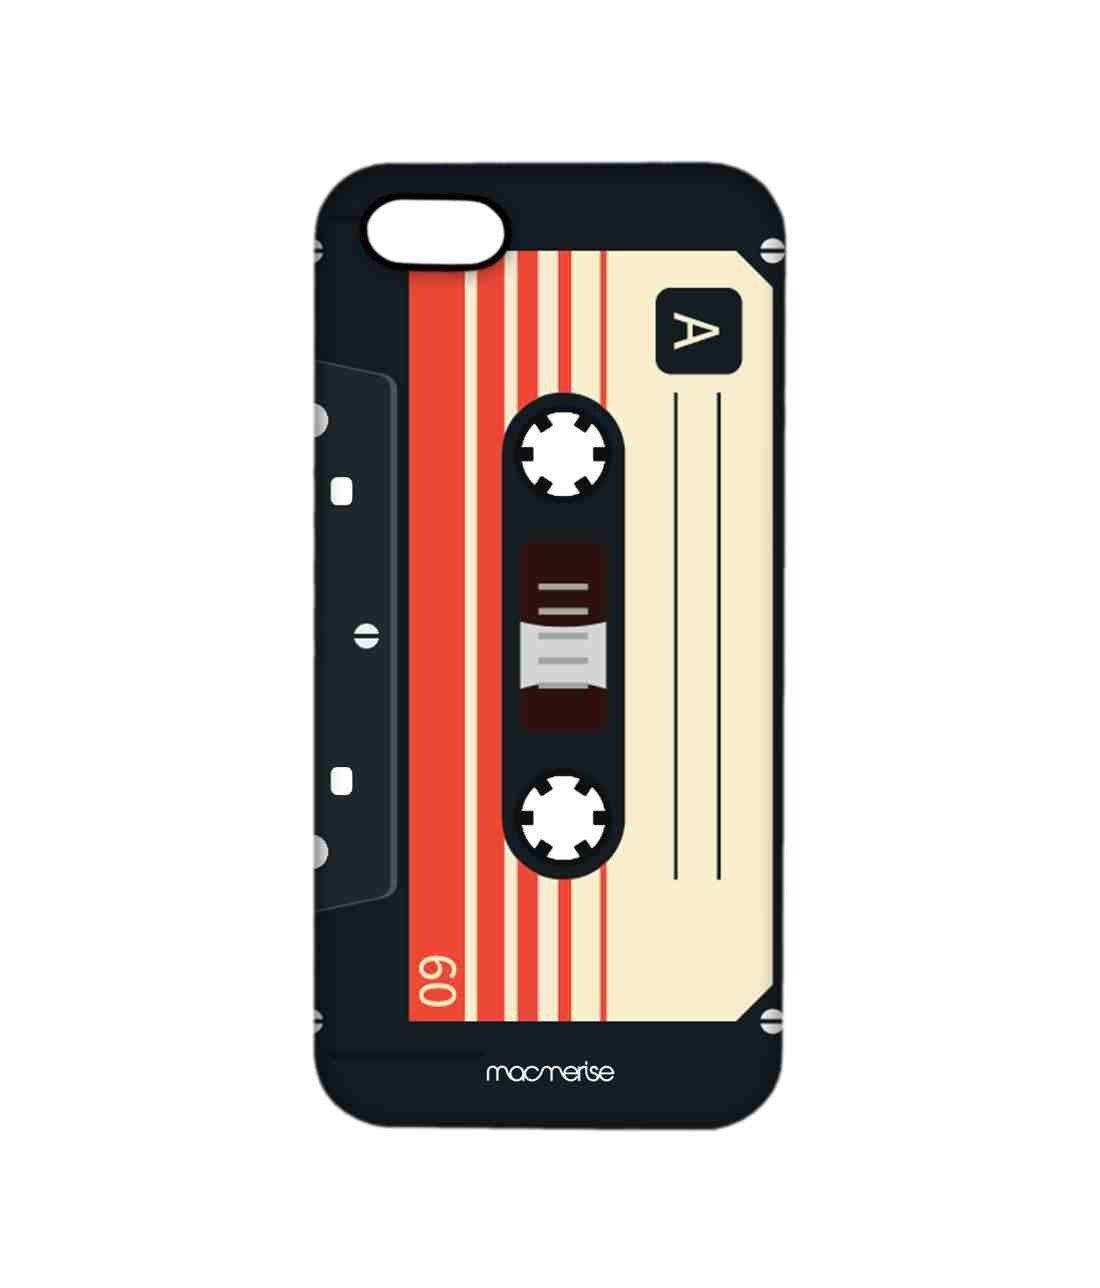 Casette Black - Sleek Phone Case for iPhone 5/5S